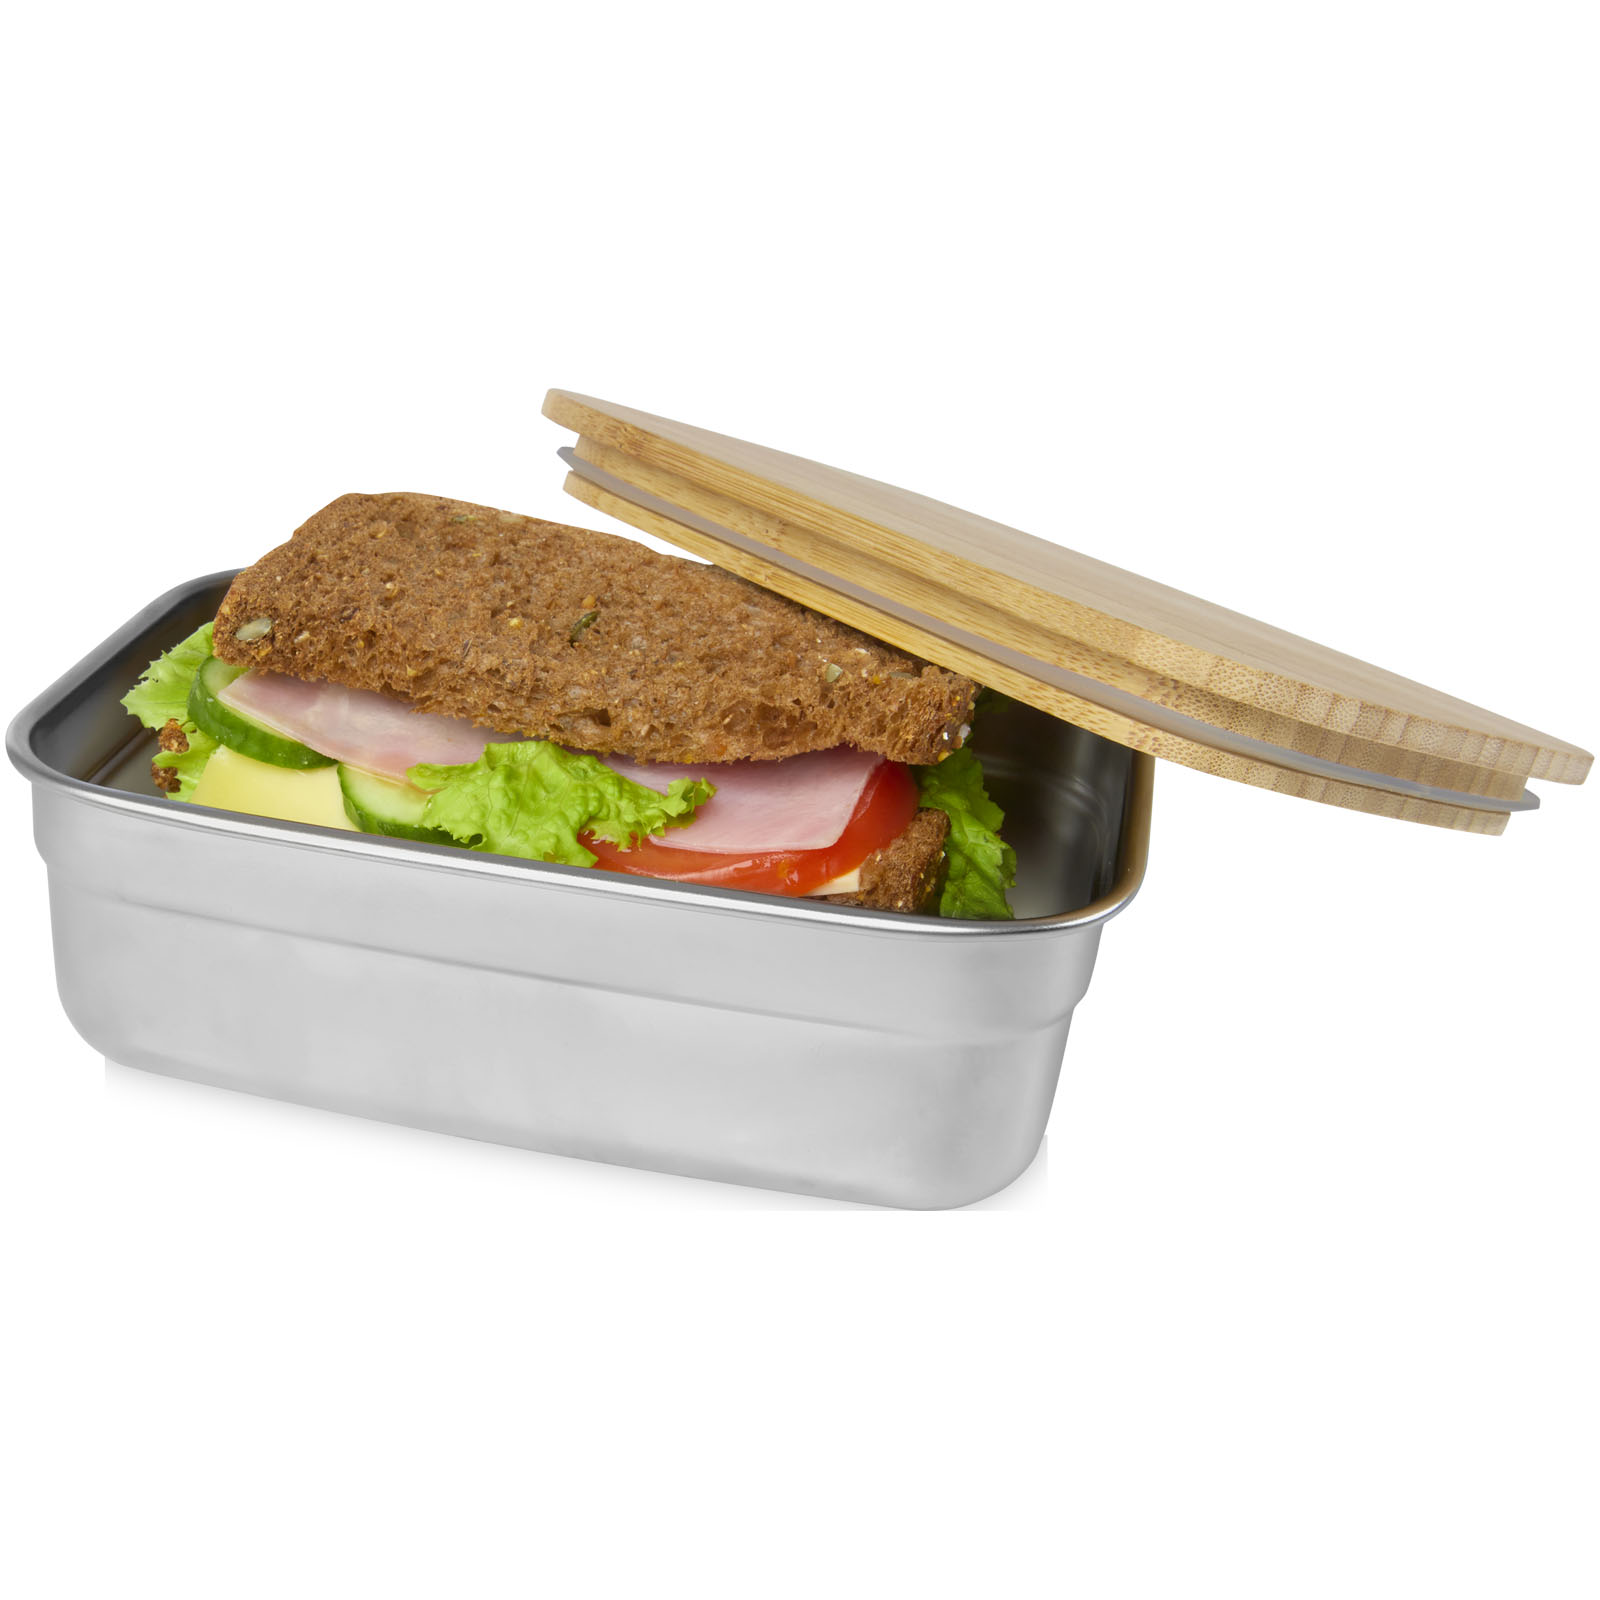 Boîtes-repas publicitaires - Boîte repas Tite en acier inoxydable avec couvercle en bambou - 2